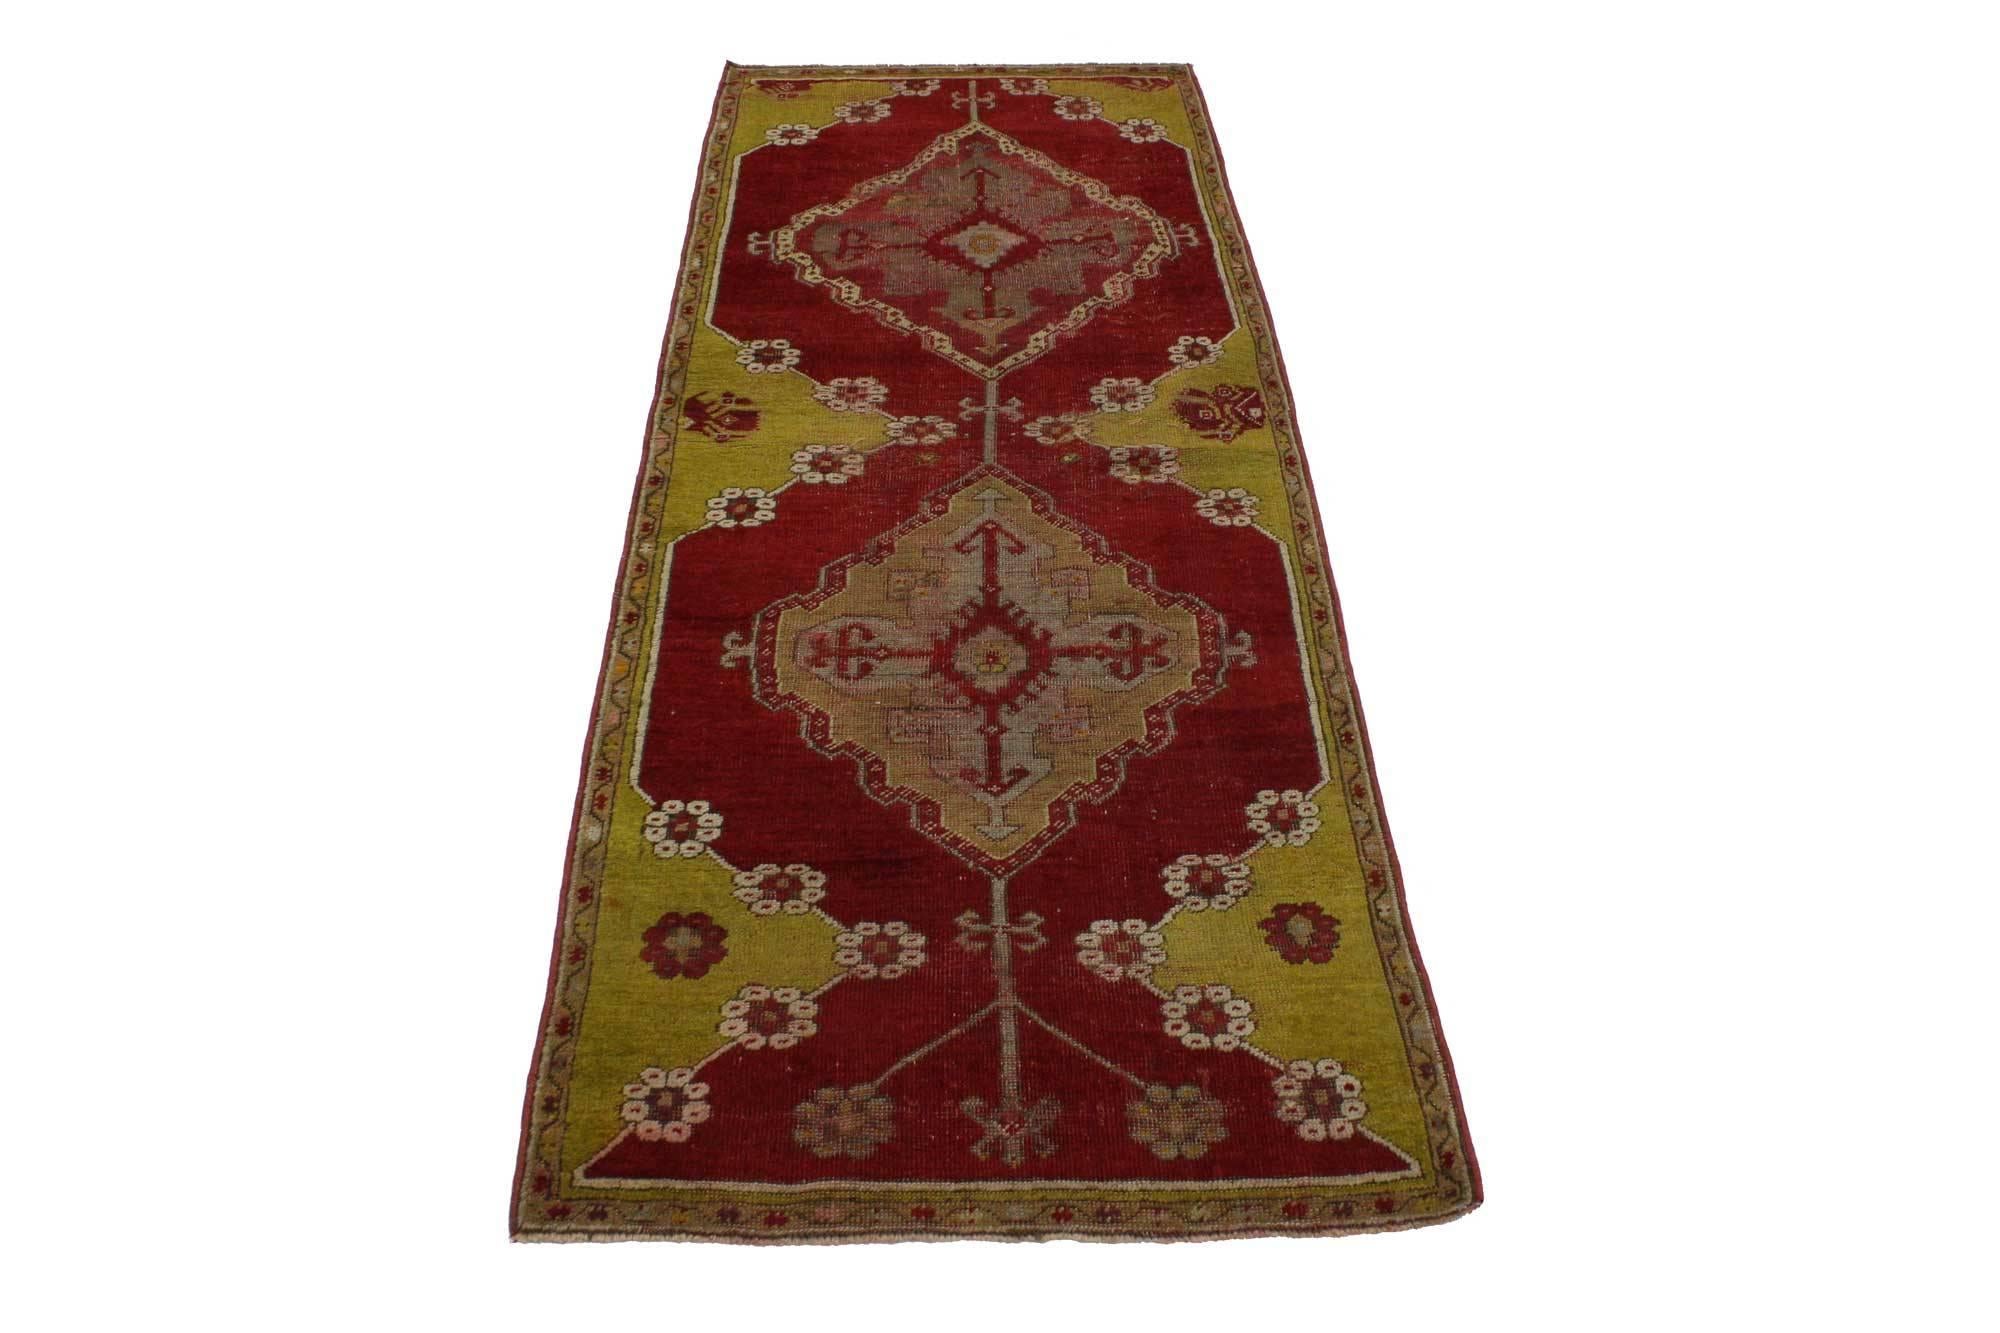 51734, tapis vintage turc Oushak avec style jacobéen, cuisine, foyer ou entrée. Ce royal tapis turc Oushak ressemble à un somptueux velours italien coupé, rappelant le riche et luxueux mobilier design d'une époque révolue, comme le règne du roi